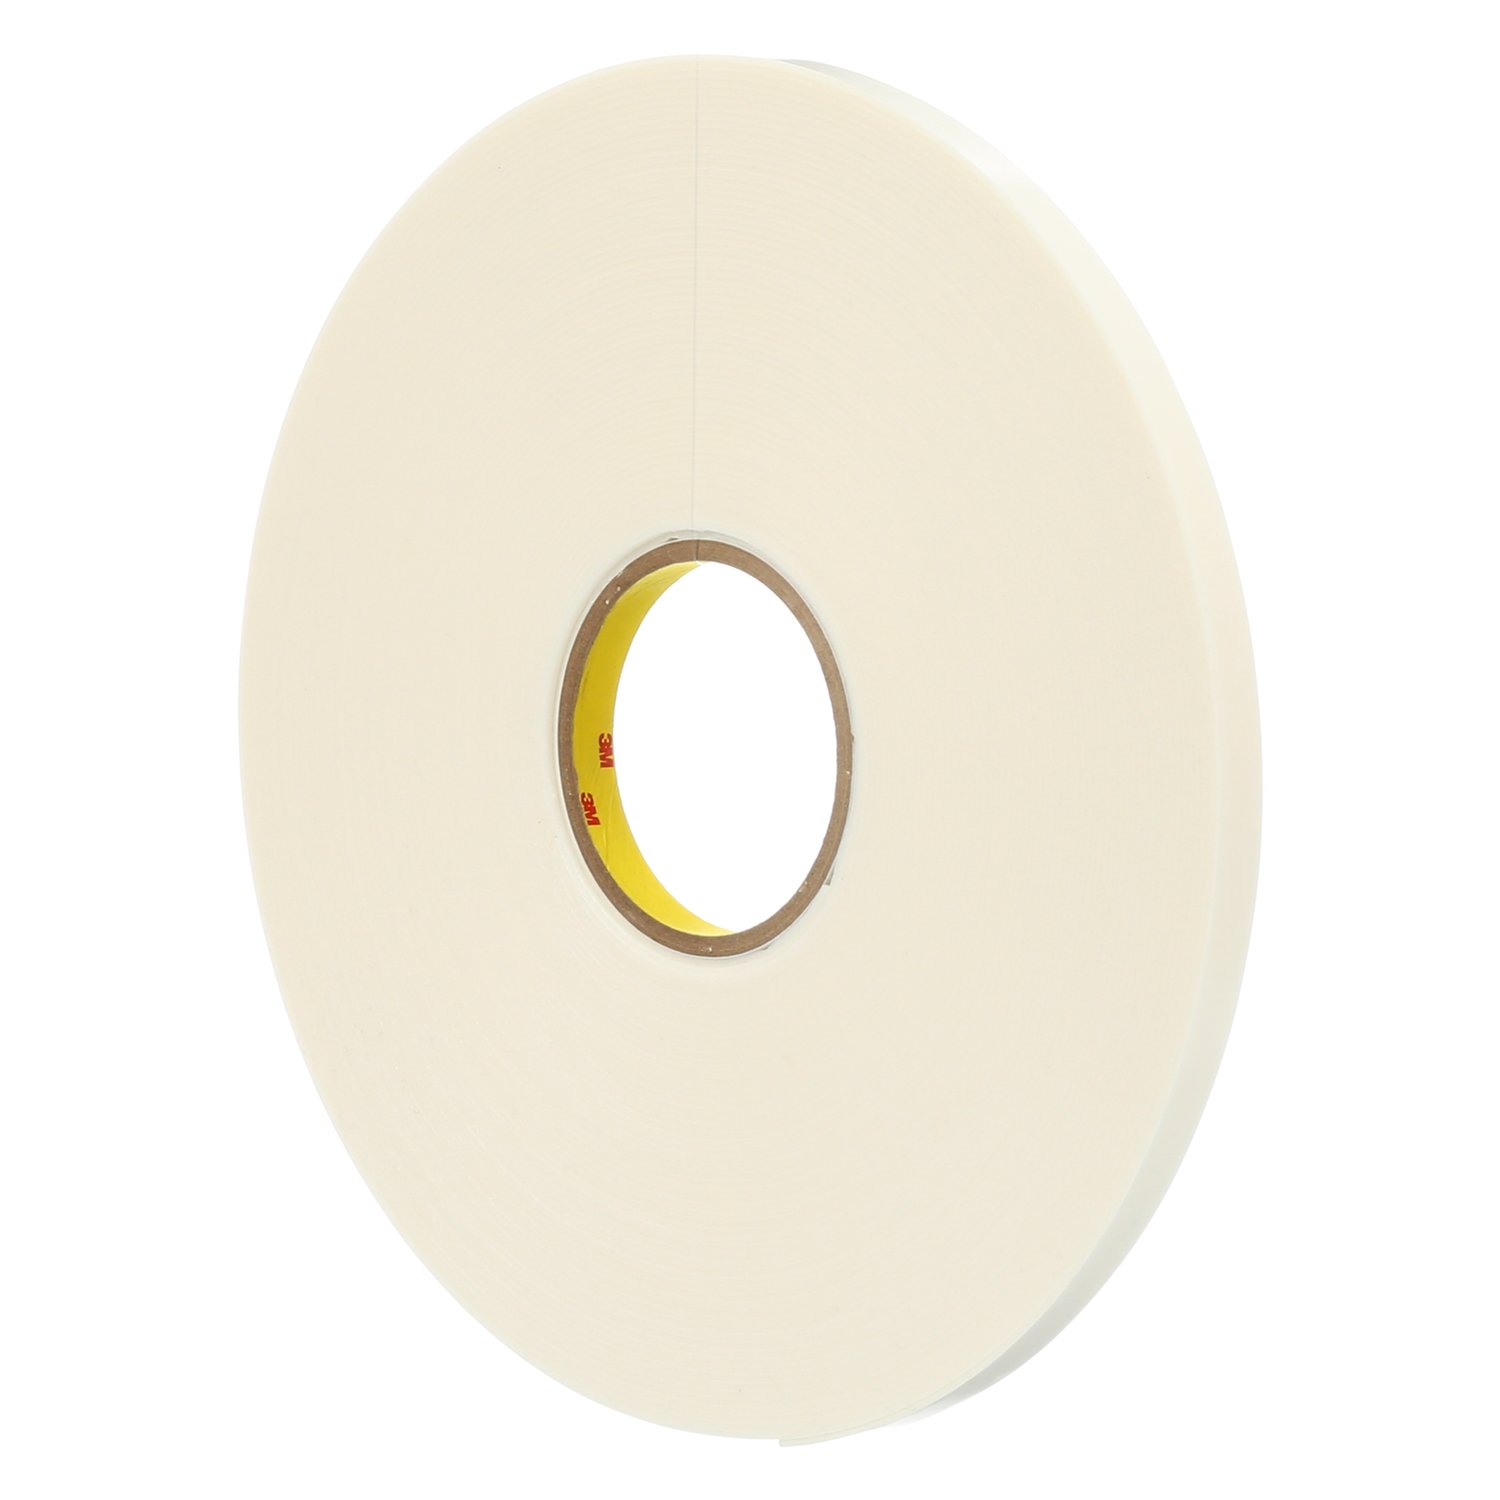 7010373743 - 3M Double Coated Polyethylene Foam Tape 4466, White, 3/8 in x 36 yd, 62
mil, 24 rolls per case